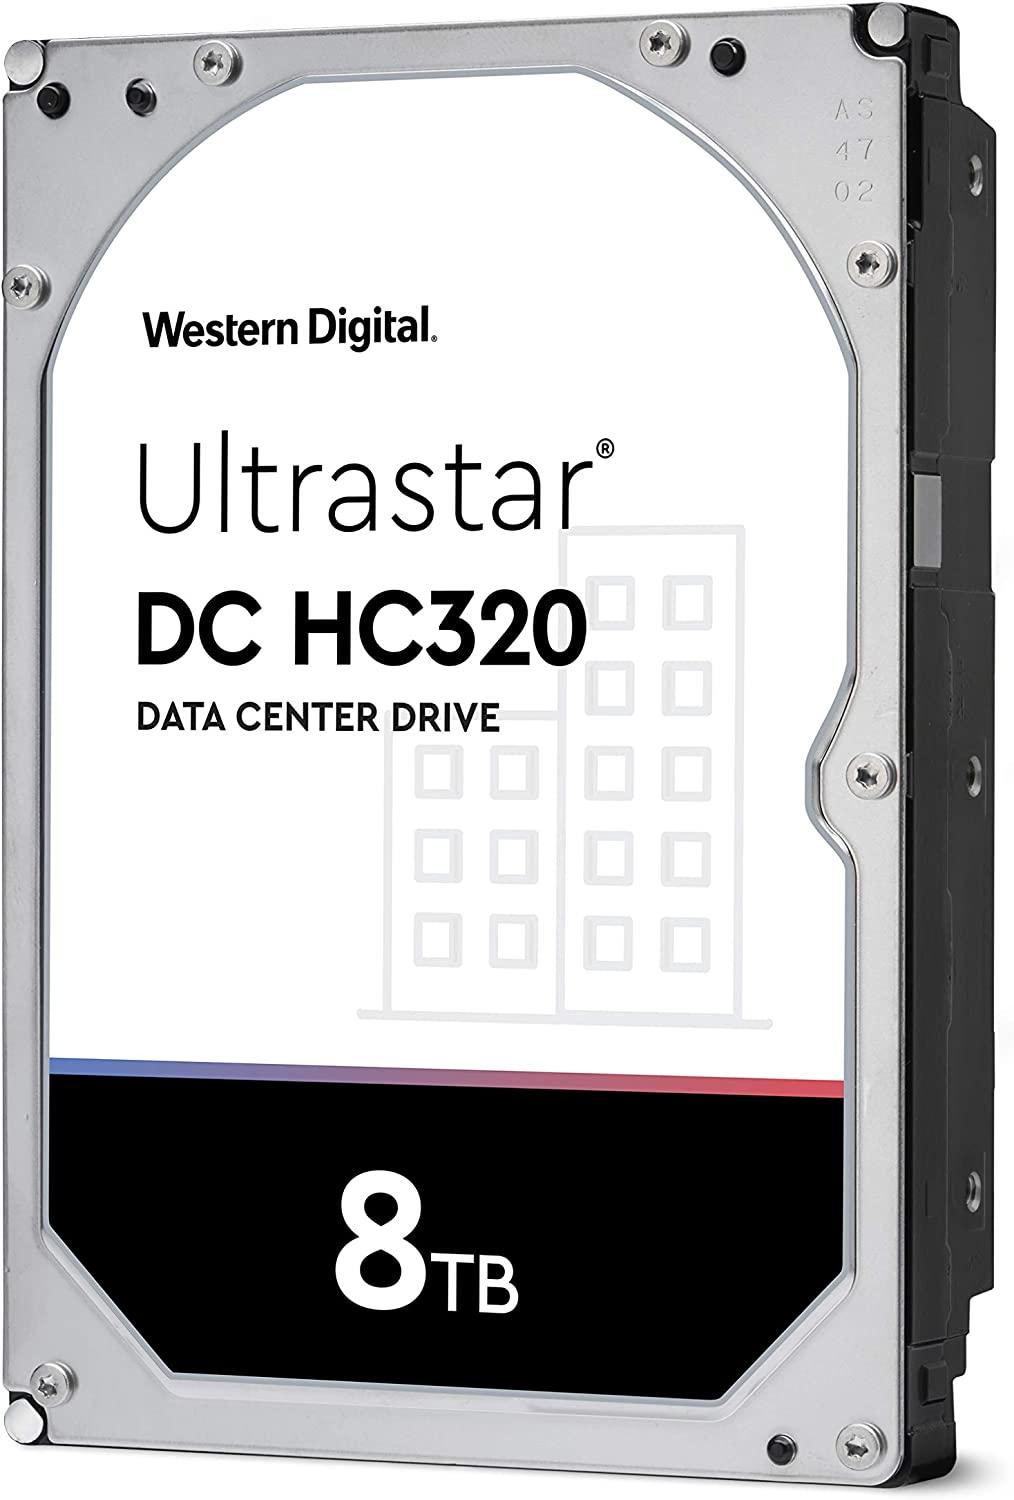 Хард диск WD Ultrastar DC HC320, 8TB, 7200RPM, SATA 6GB/s - HUS728T8TALE6L4-2